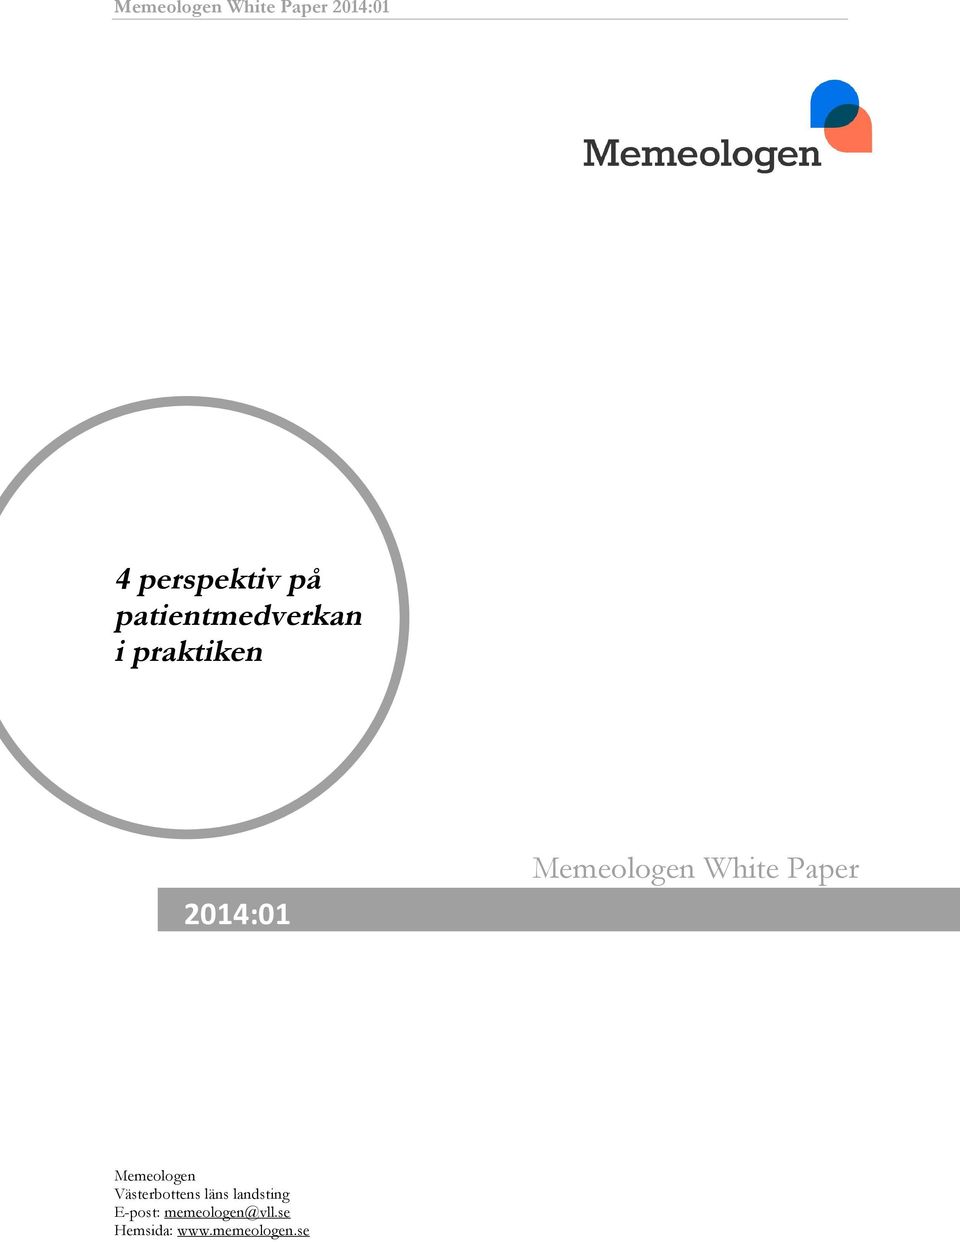 White Paper Memeologen Västerbottens läns